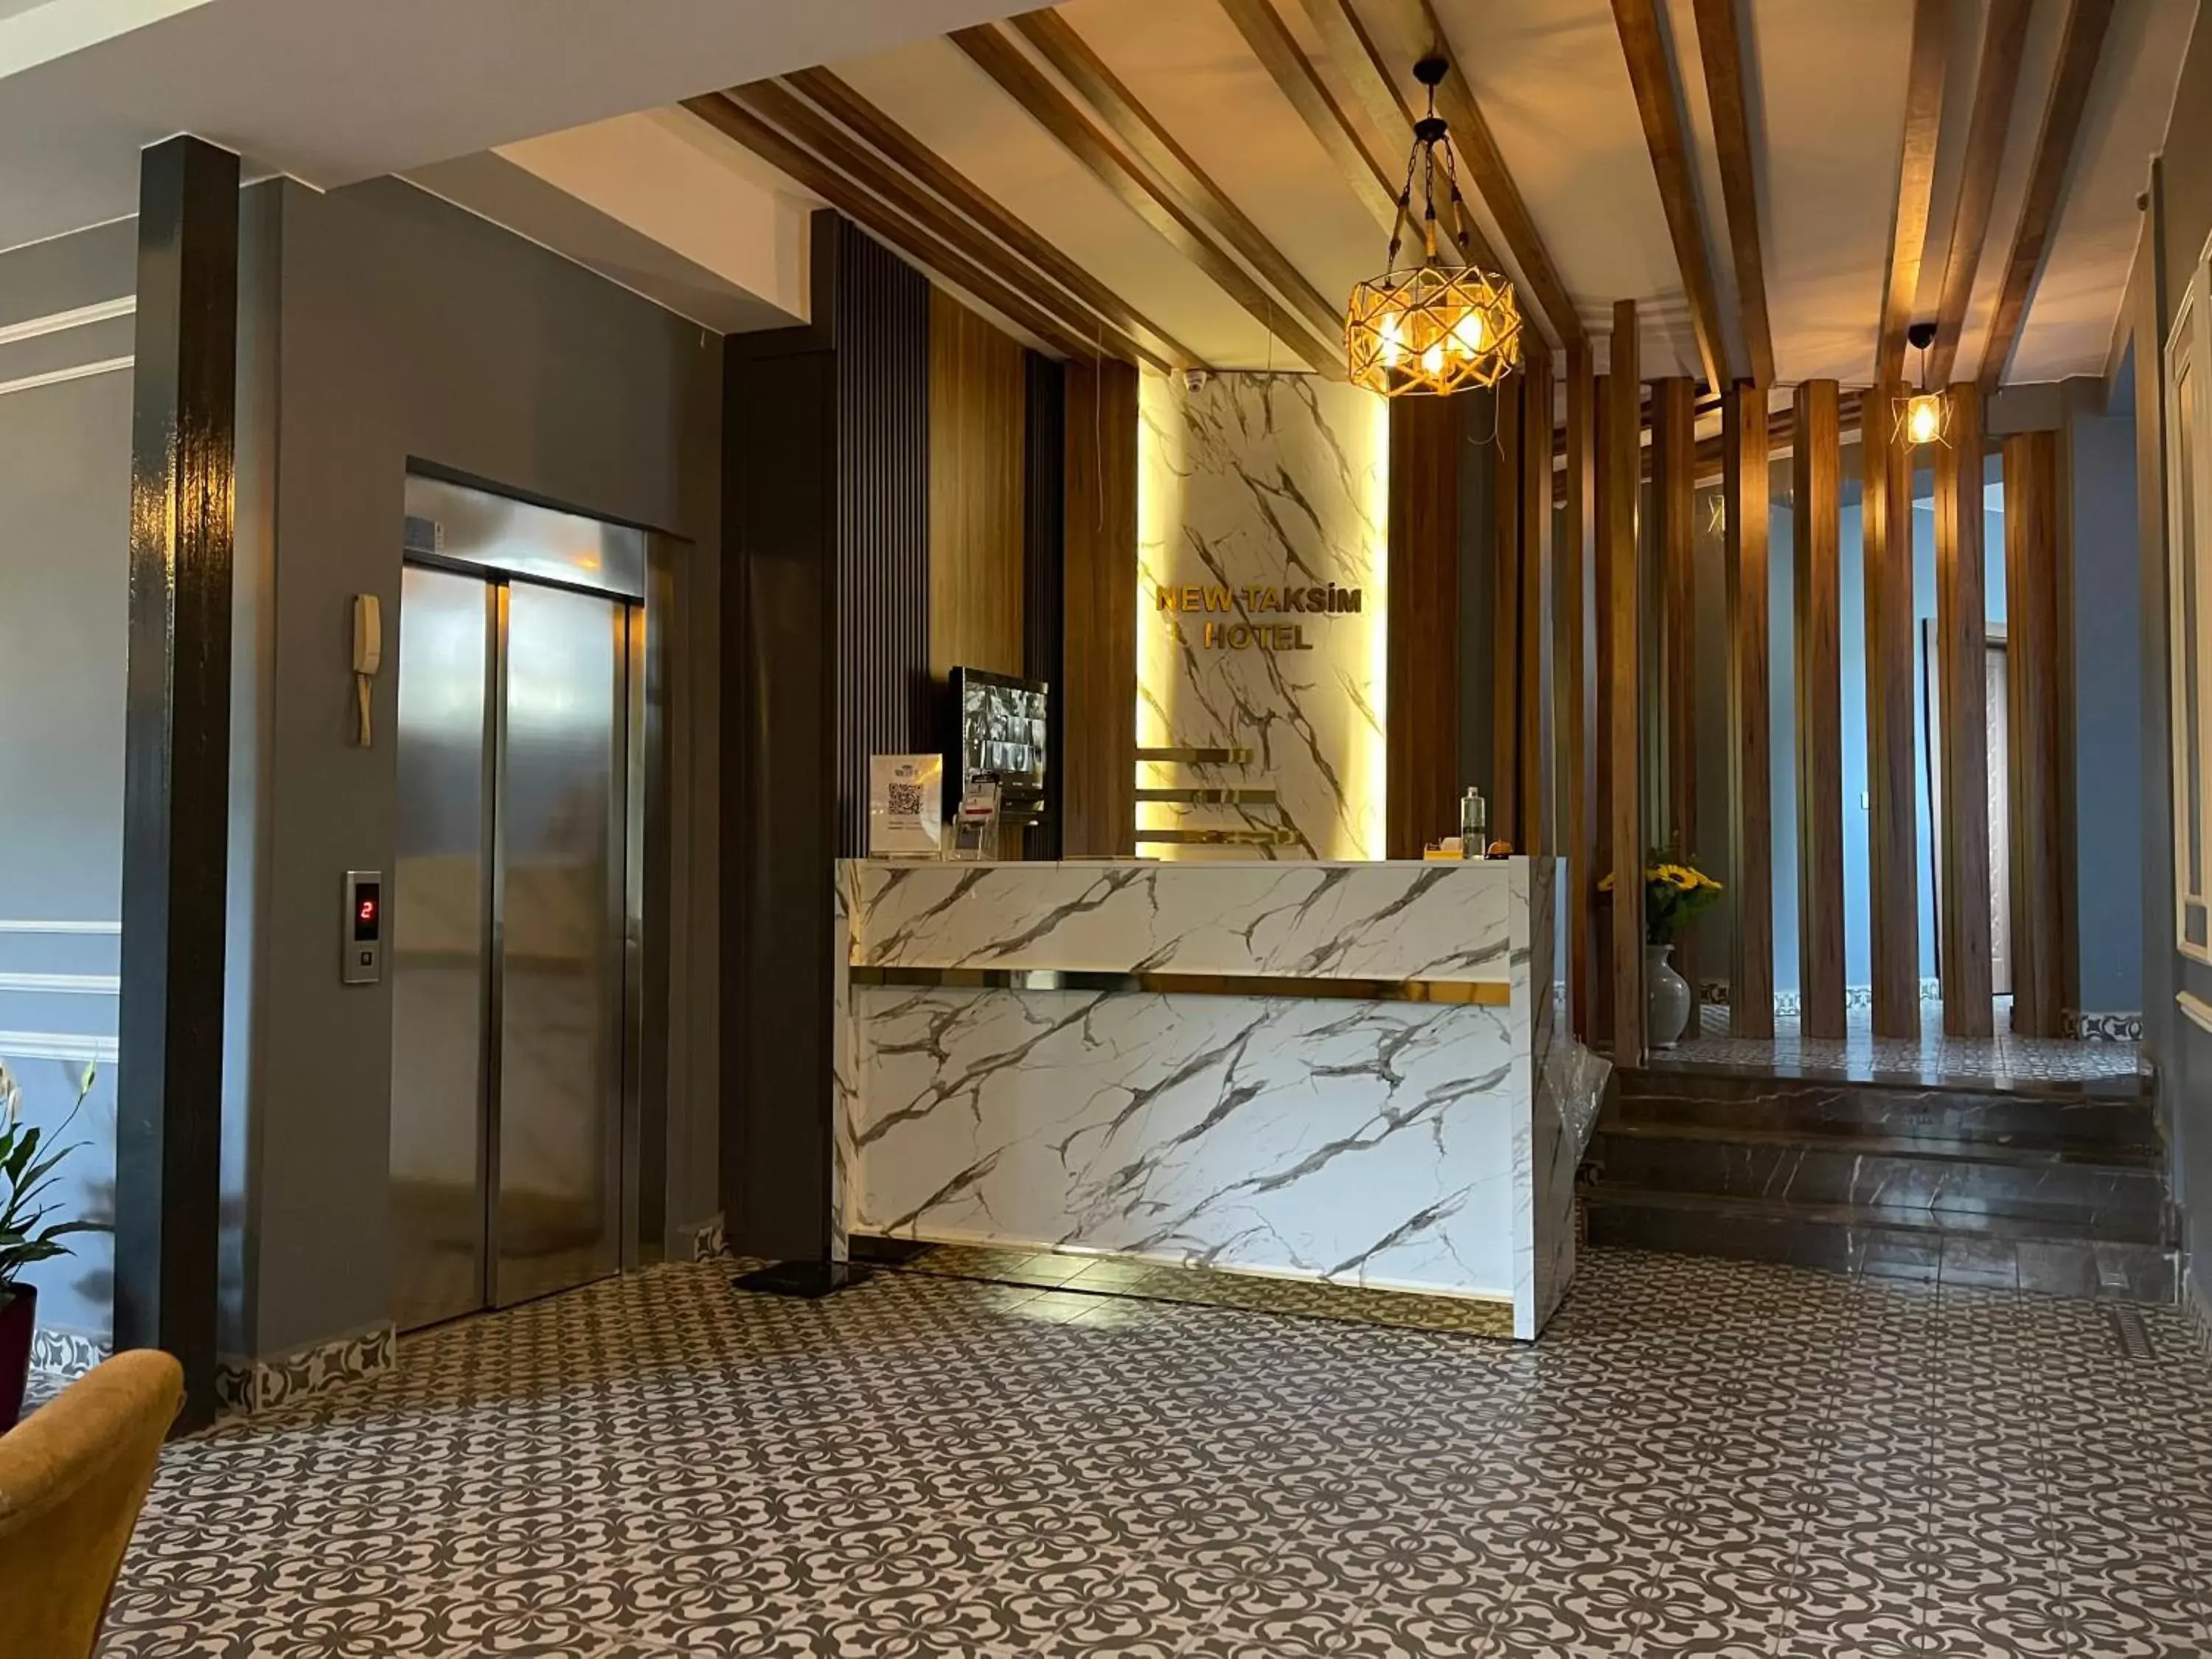 Lobby or reception in New Taksim Hotel